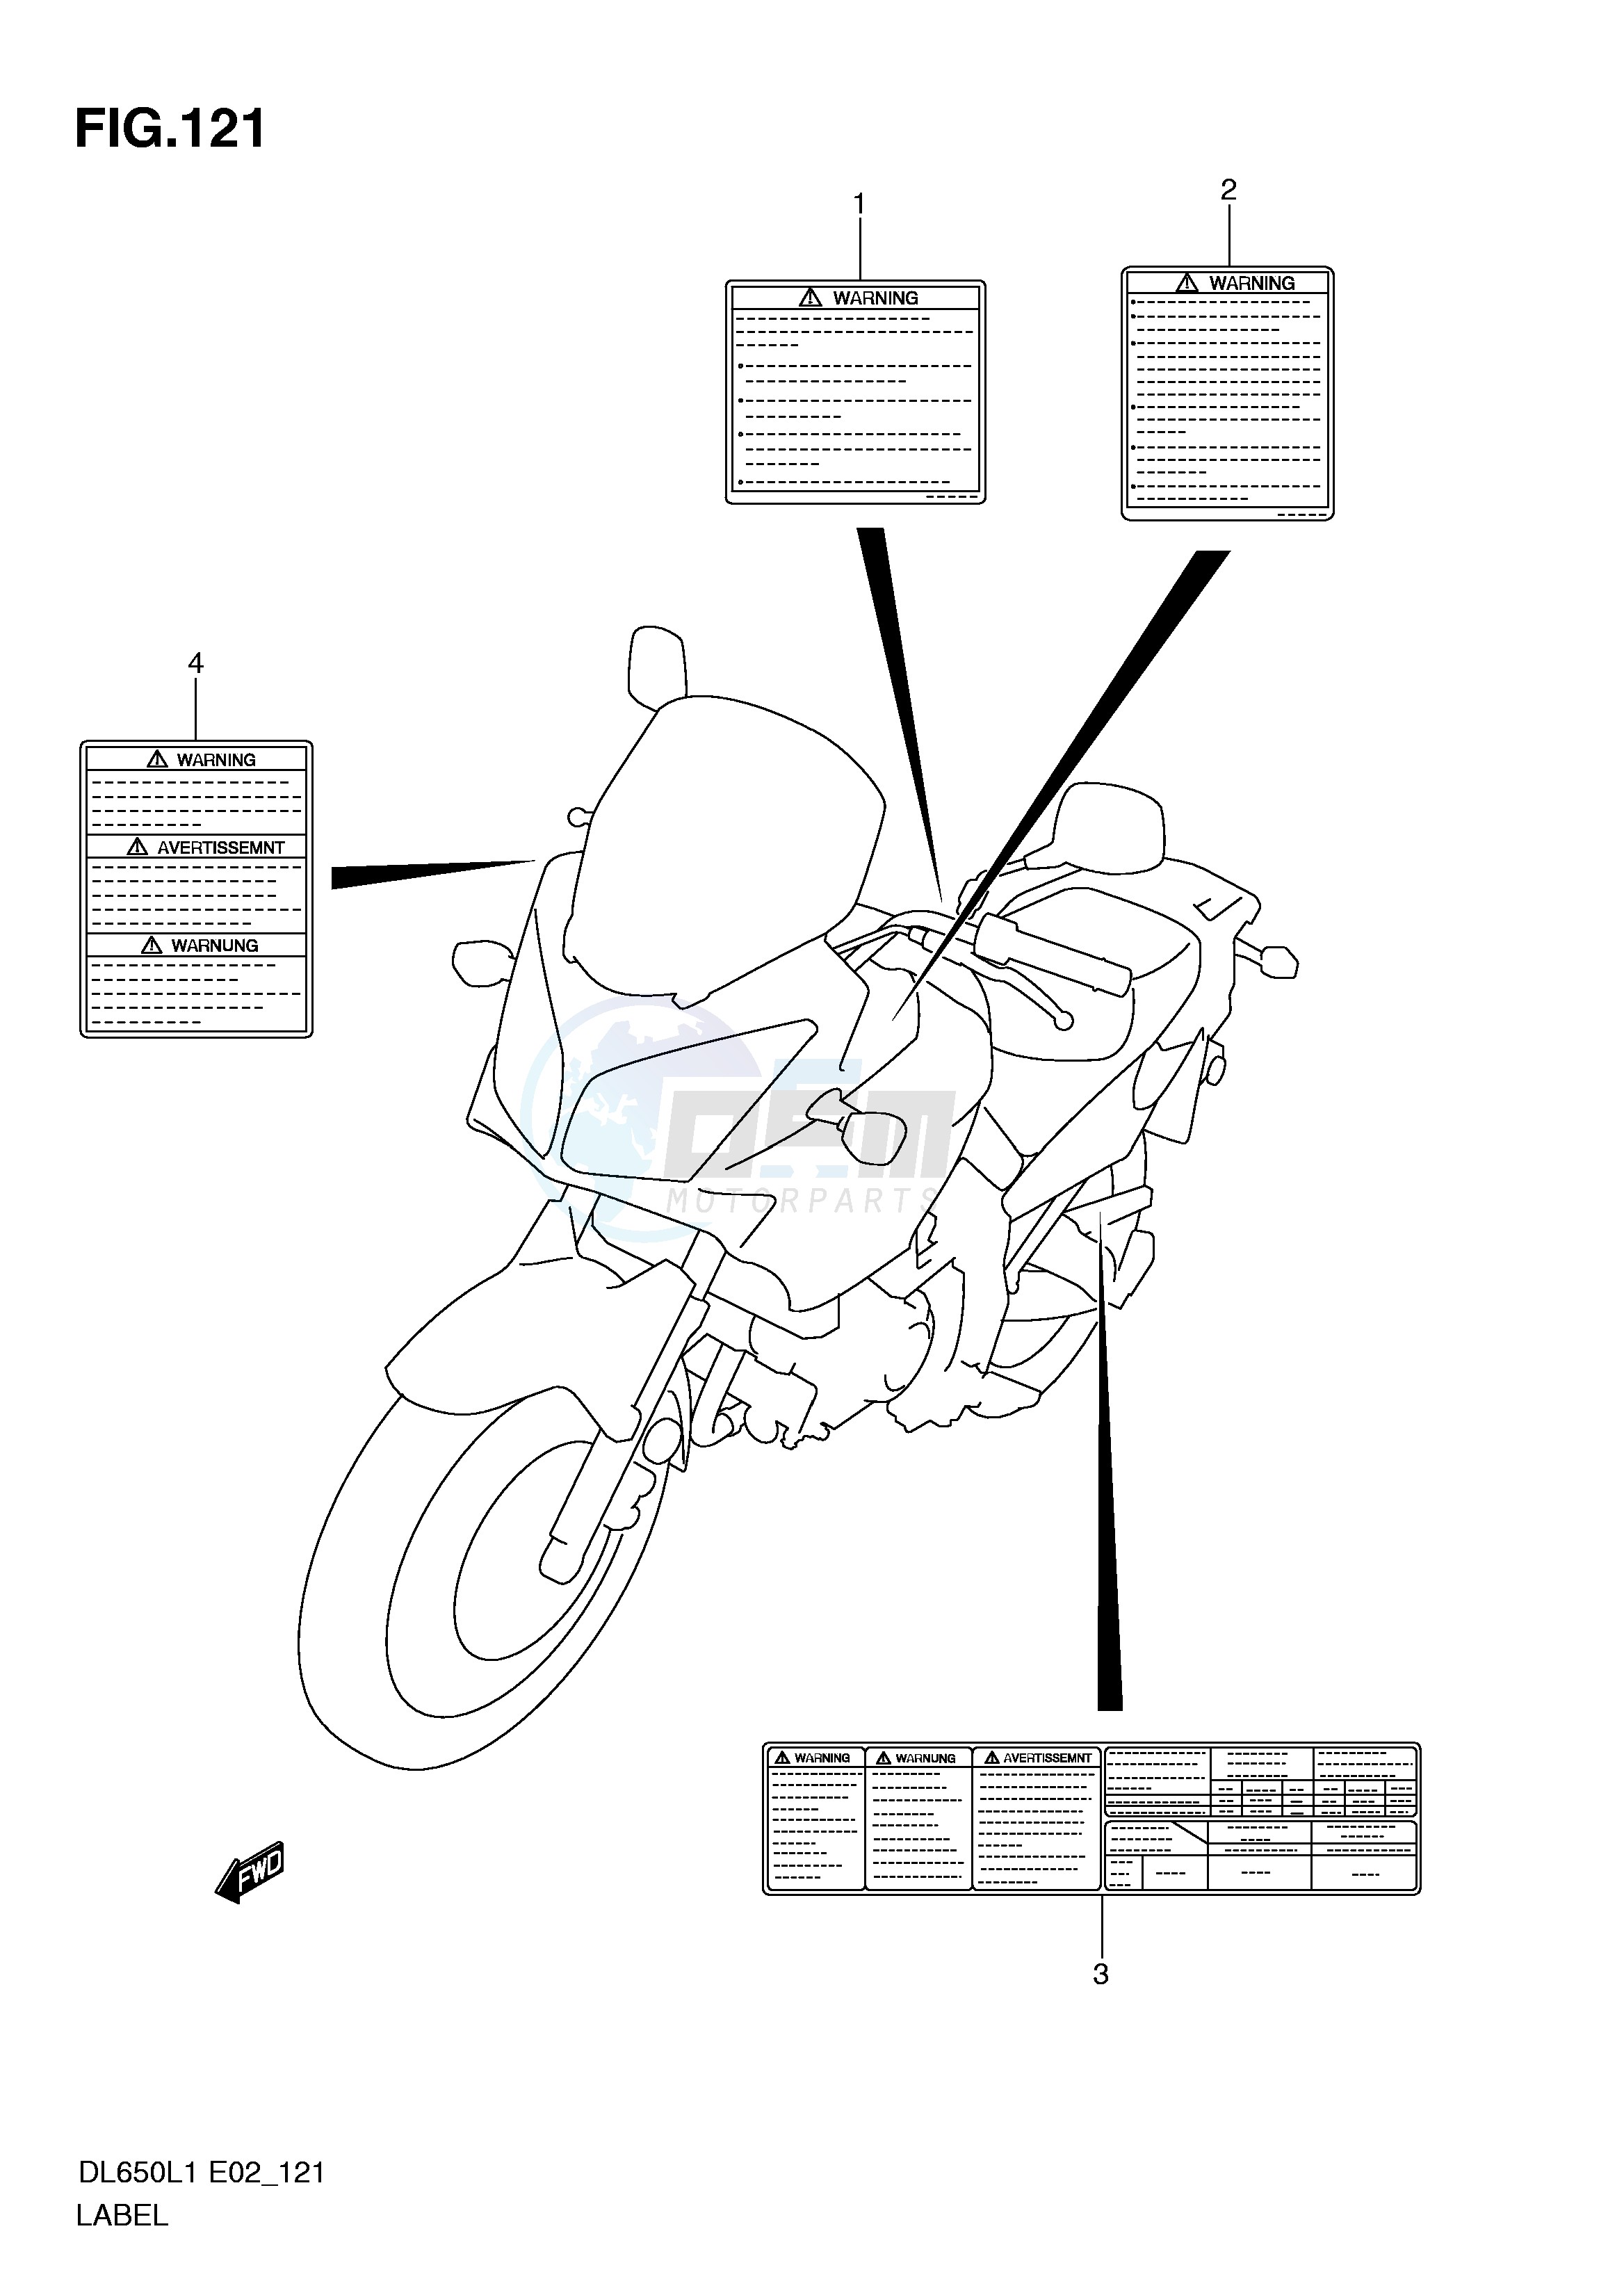 LABEL (DL650L1 E2) blueprint